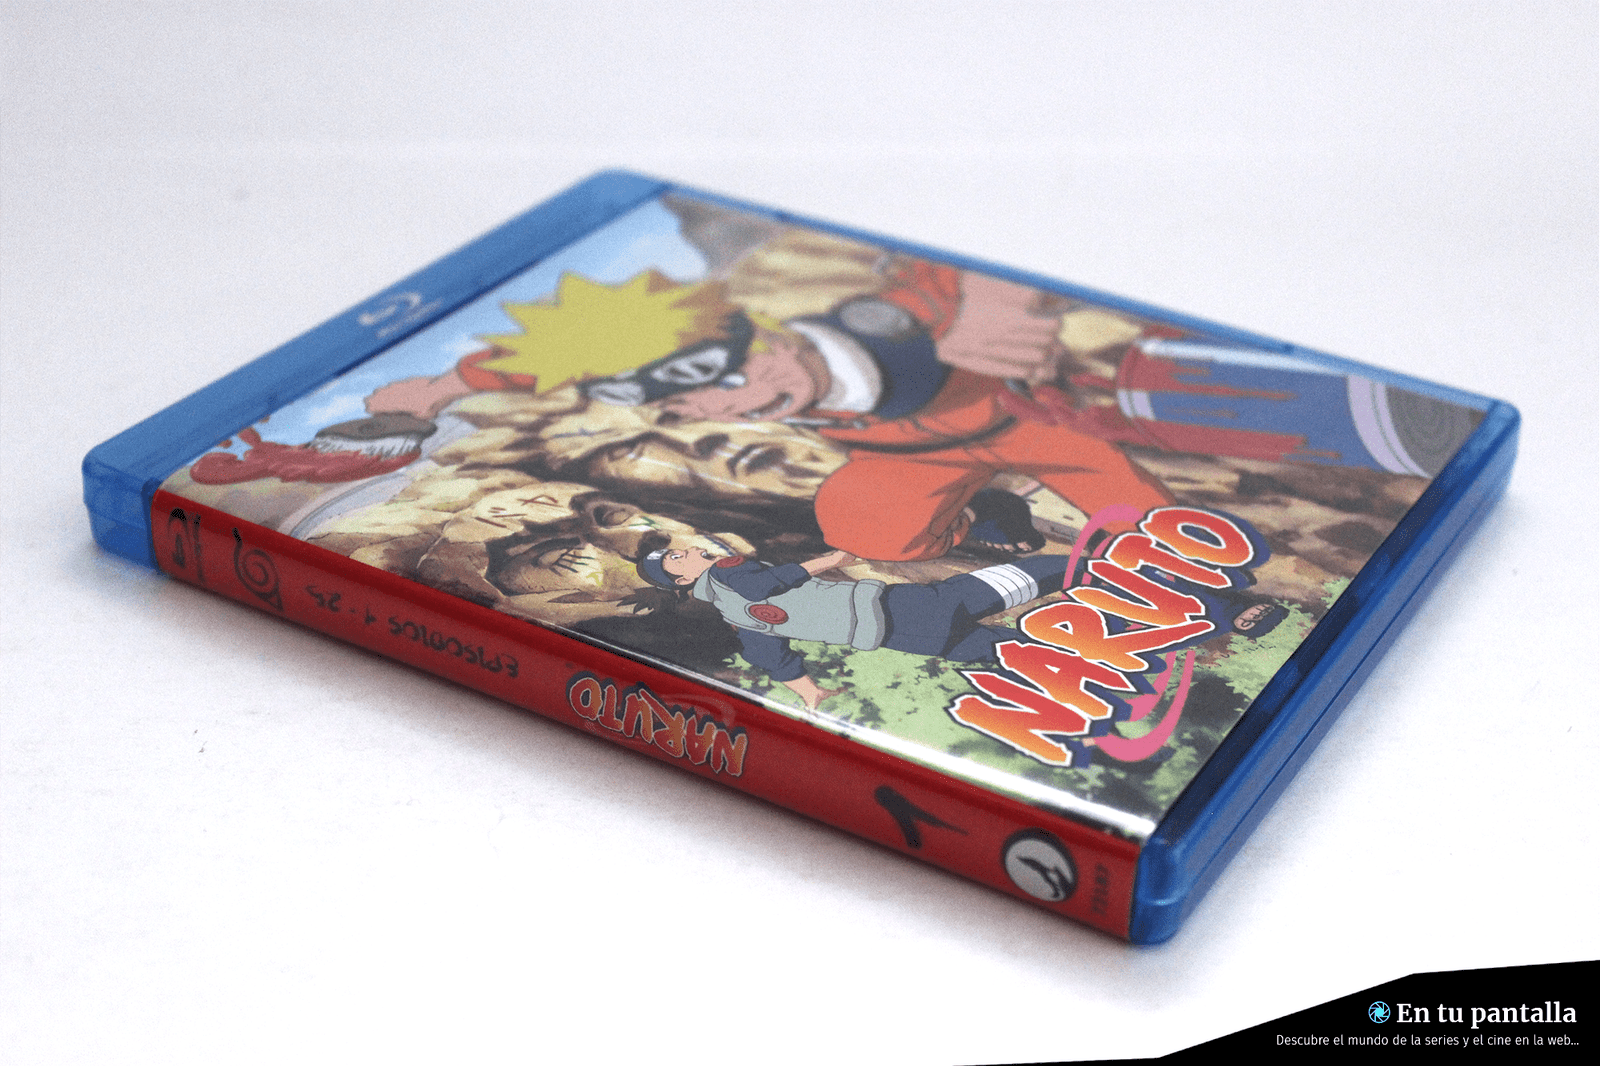 ‘Naruto’: Un vistazo al Box 1 en Blu-ray lanzado por Selecta Visión • En tu pantalla